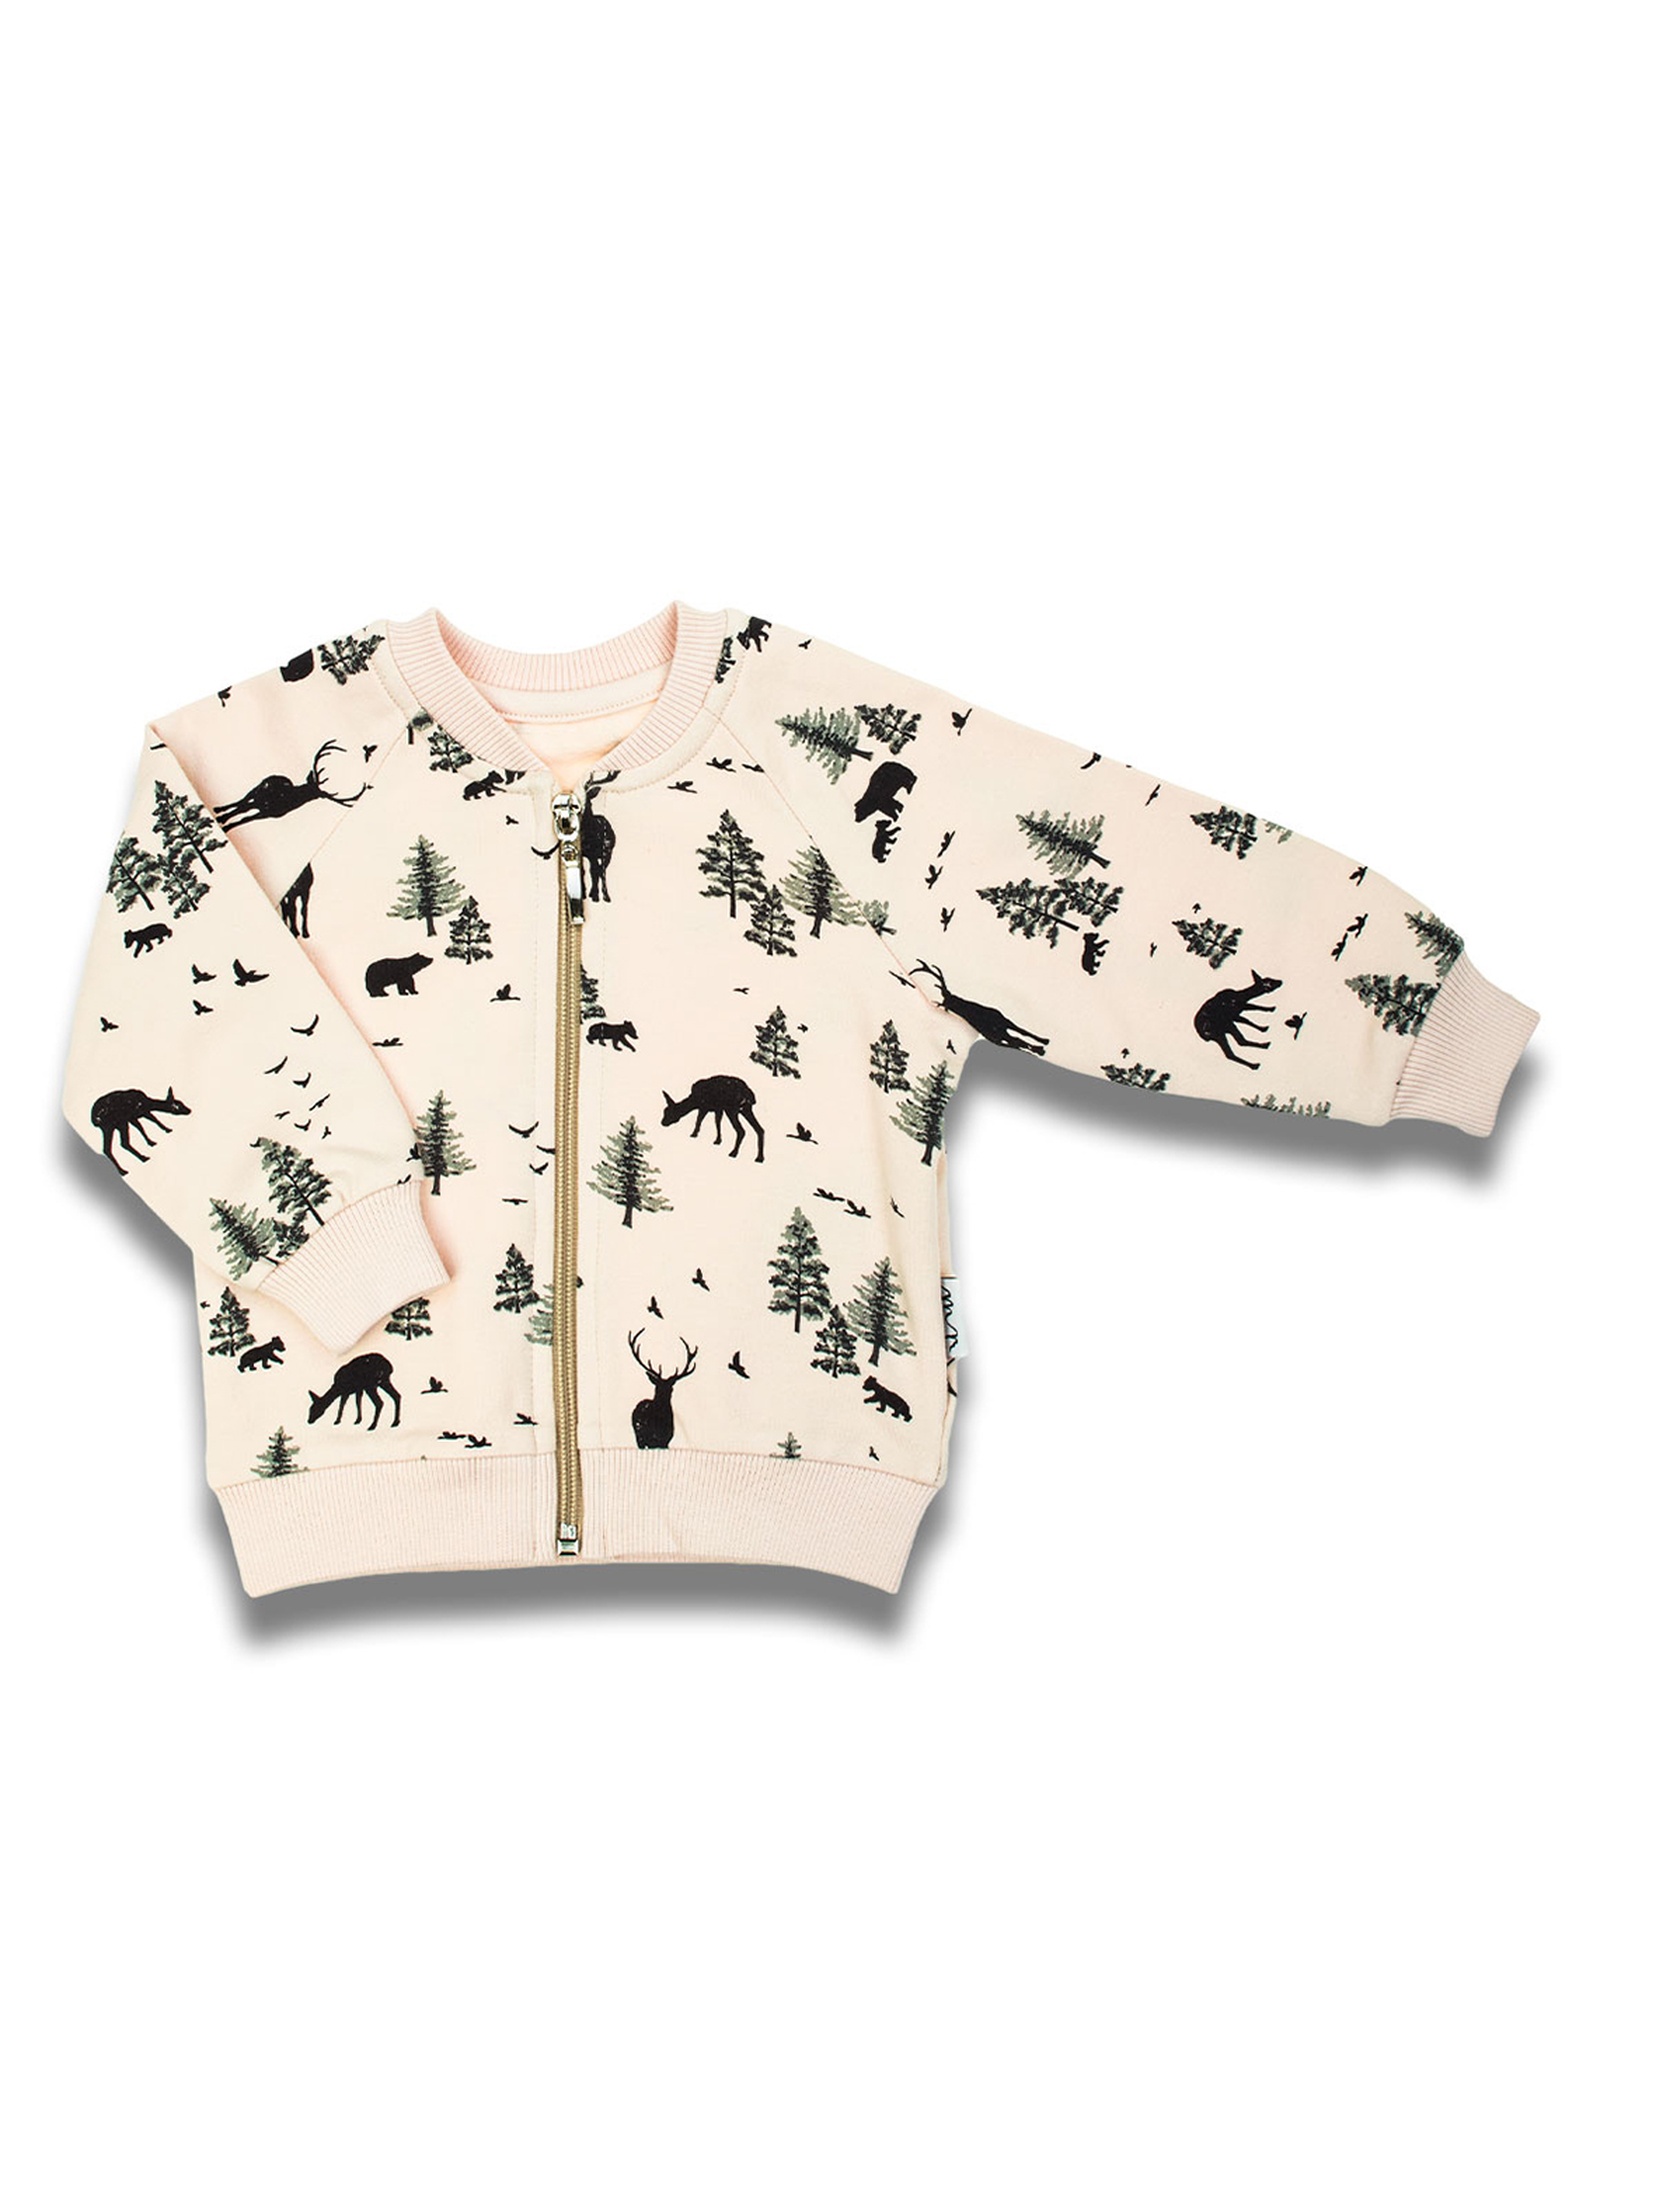 Bawełniana beżowa bluza niemowlęca chłopięca z motywem leśnym